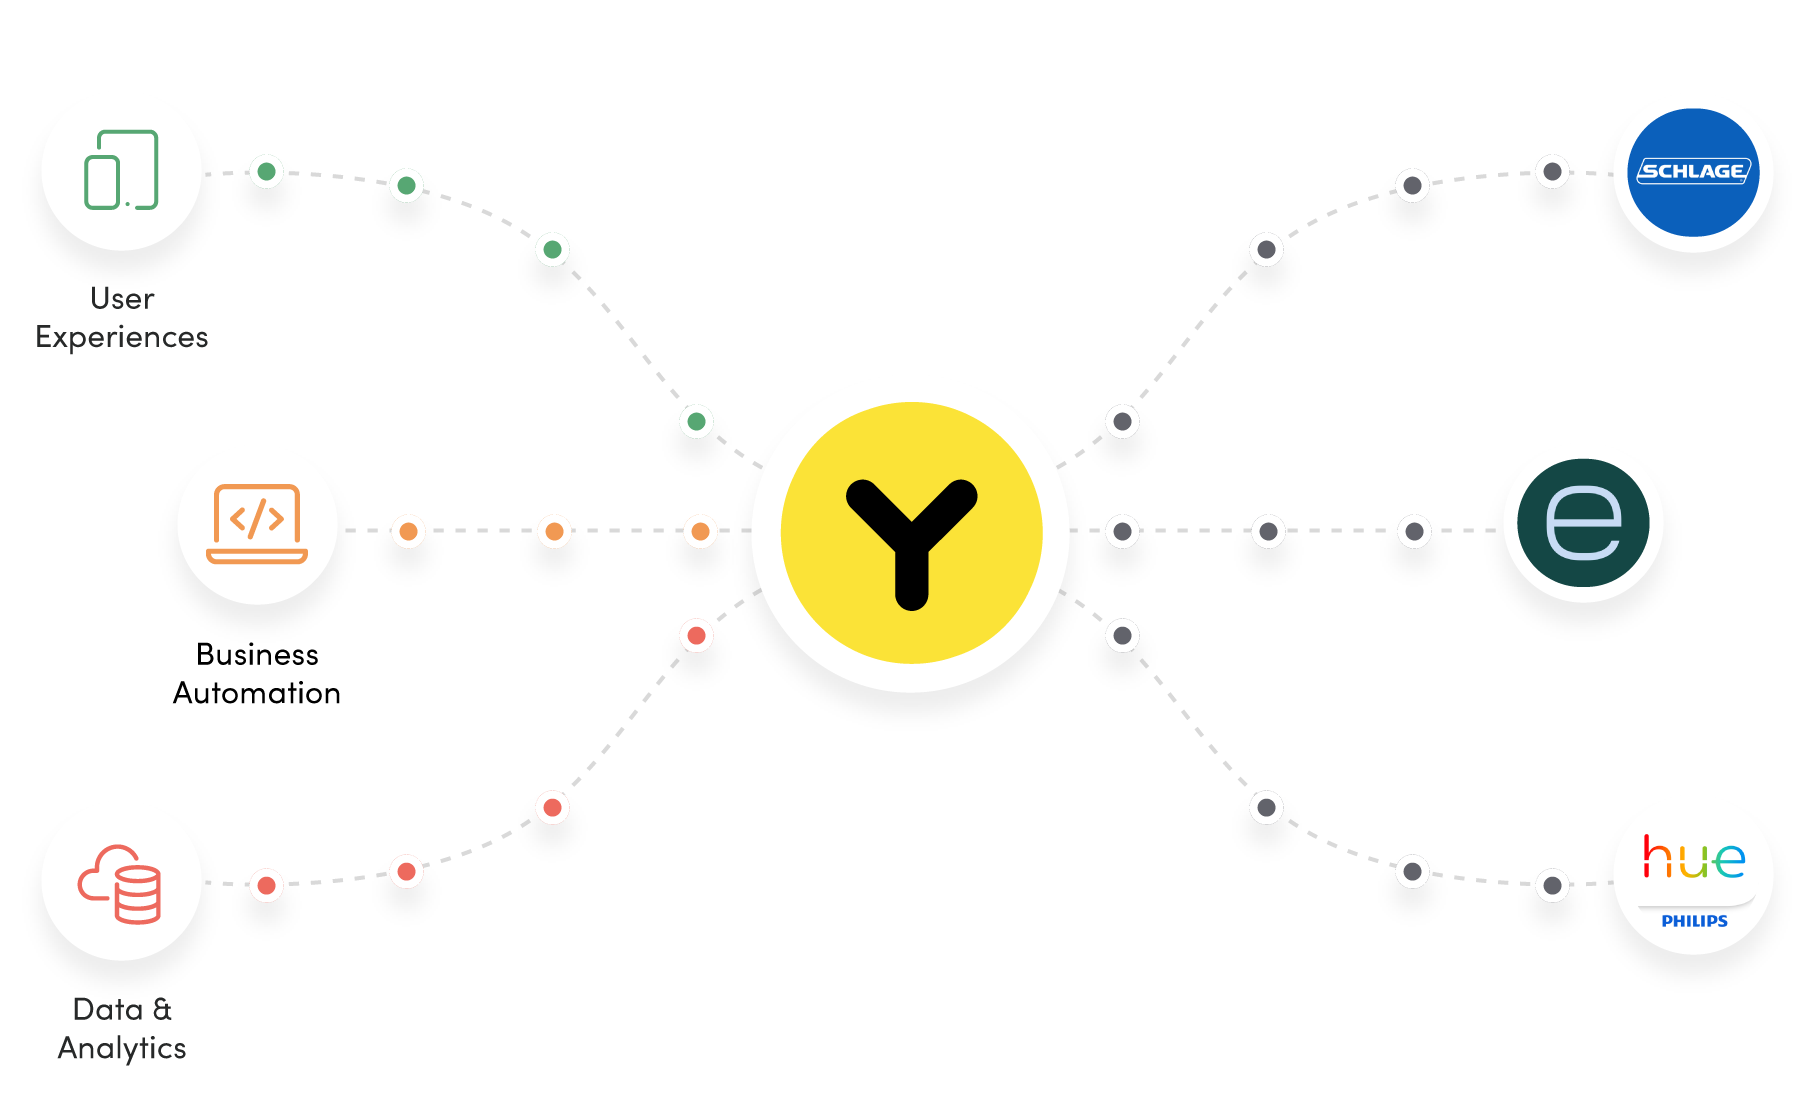 The Yonomi Platform